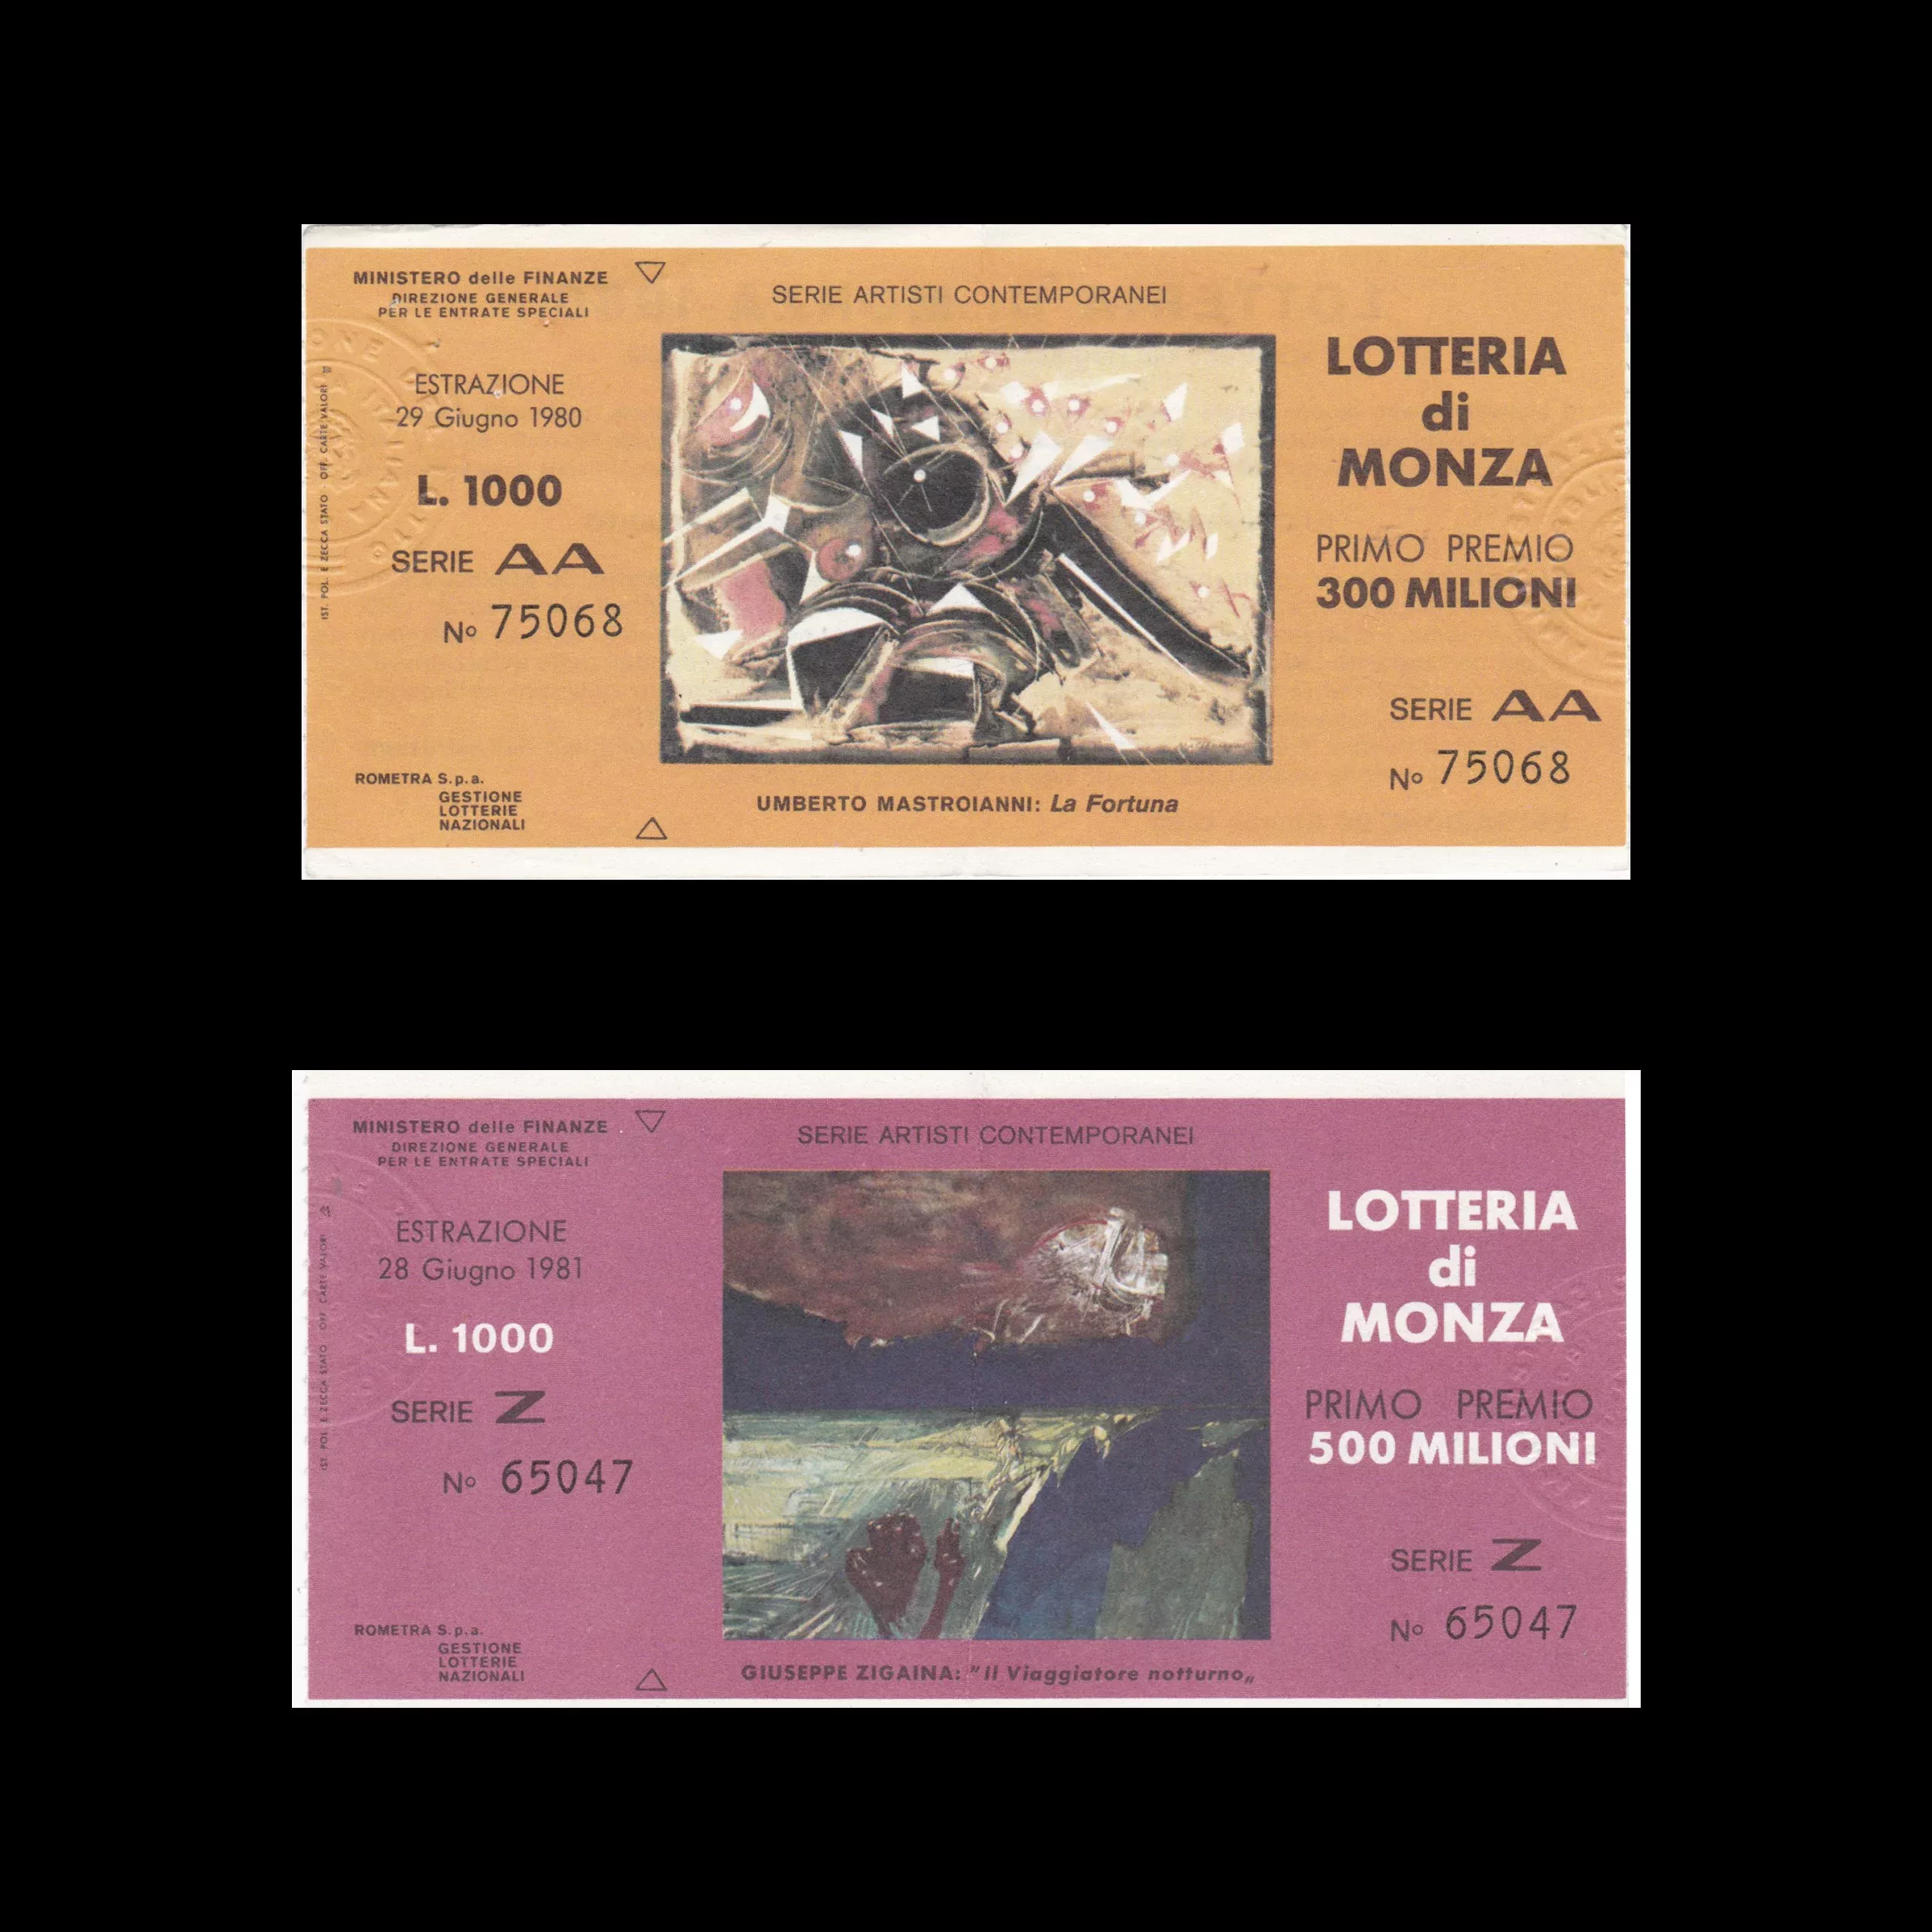 Lotteria Di Monza 1980 and 1981